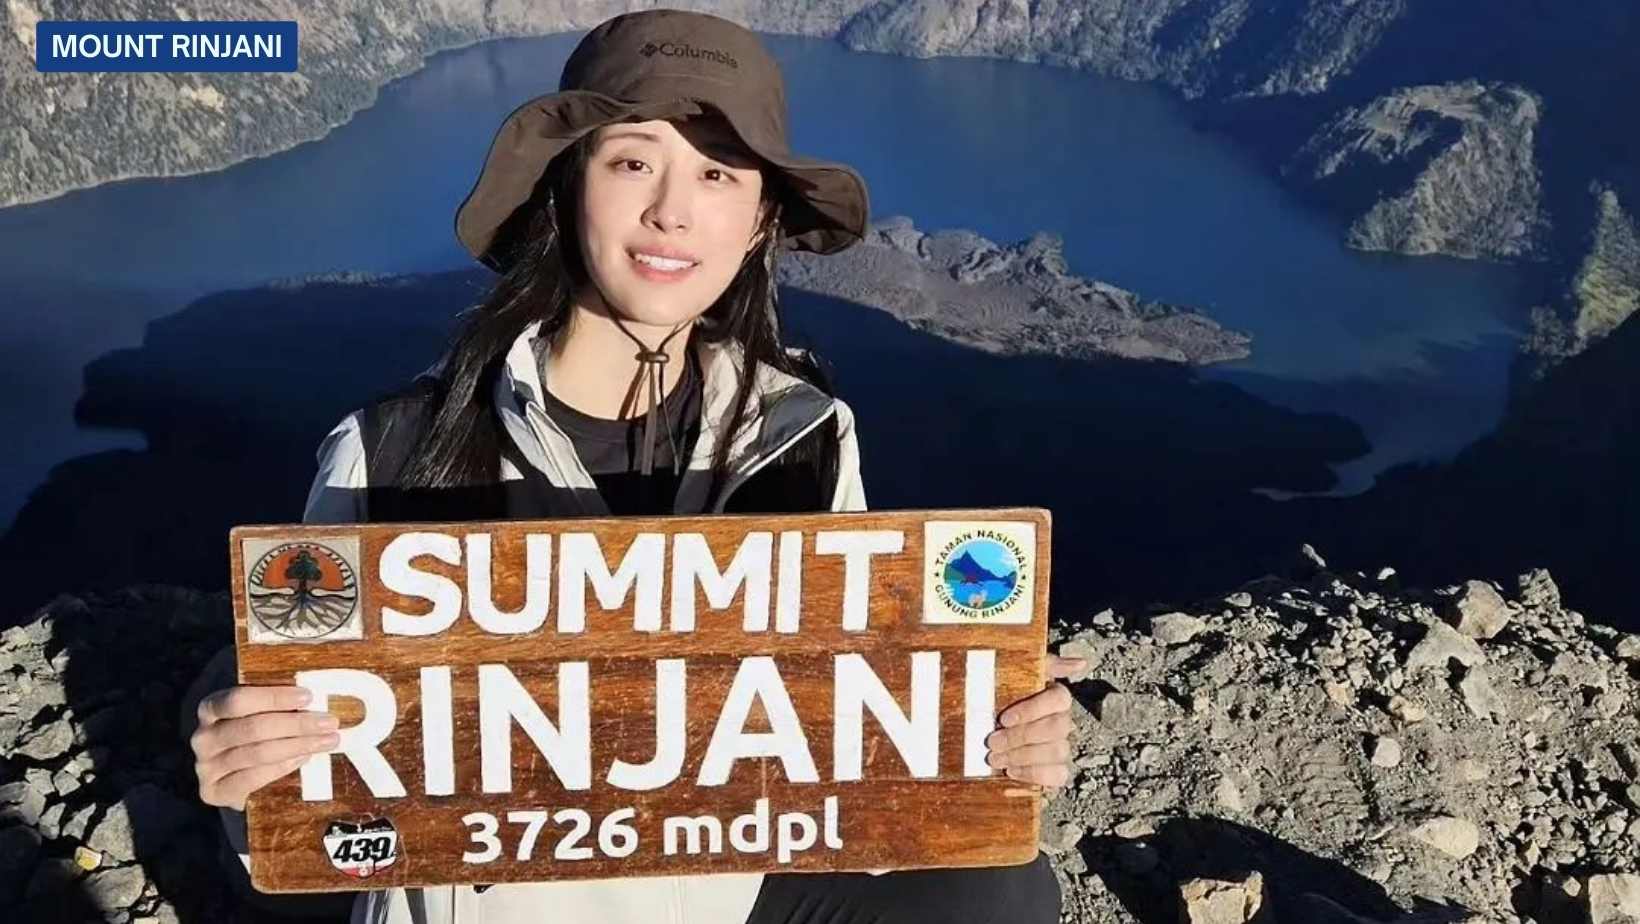 Mount Rinjani